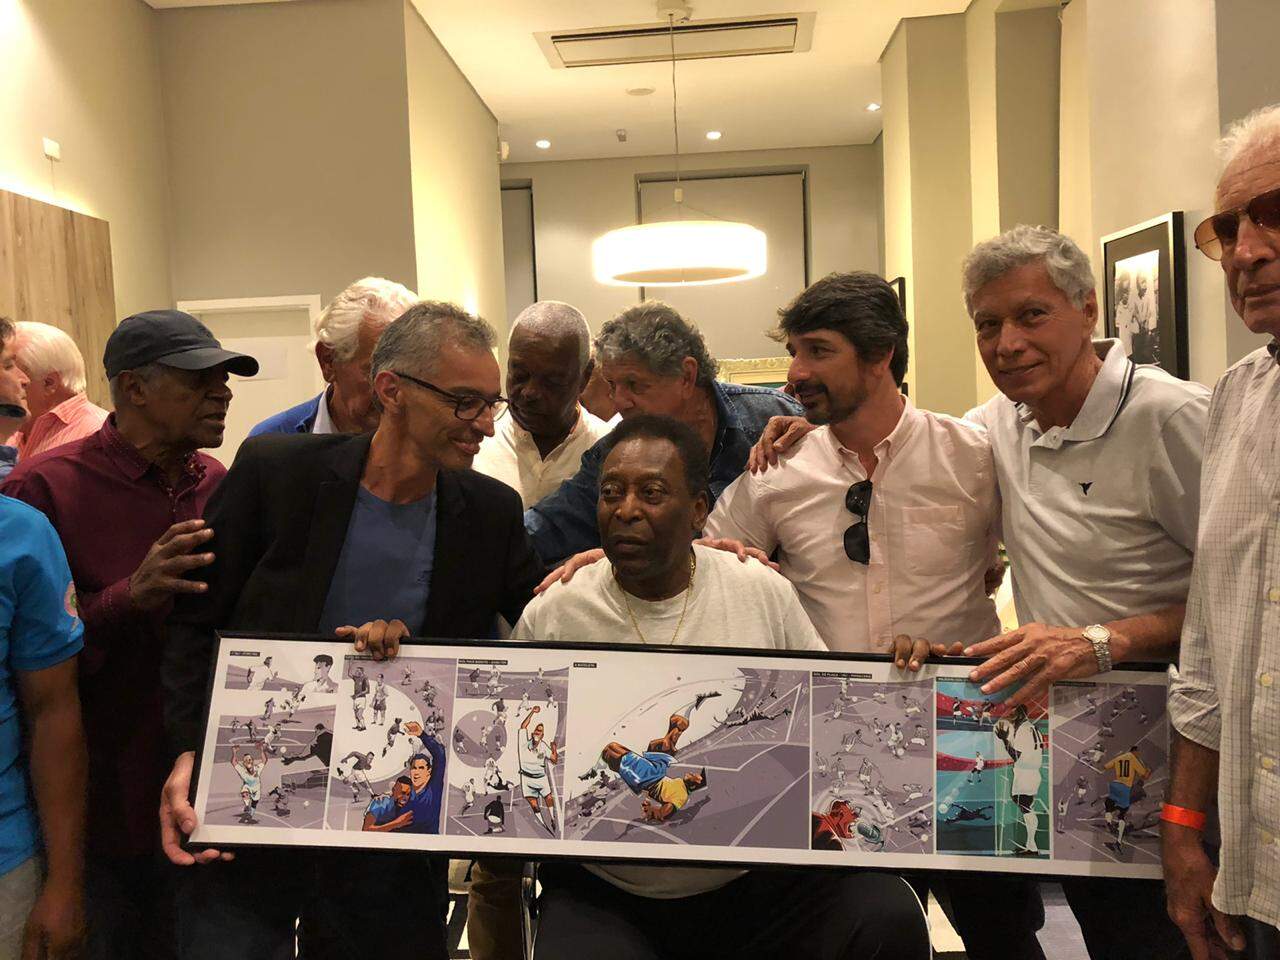 Seri esteve reunido com Pelé e outros ídolos do Santos